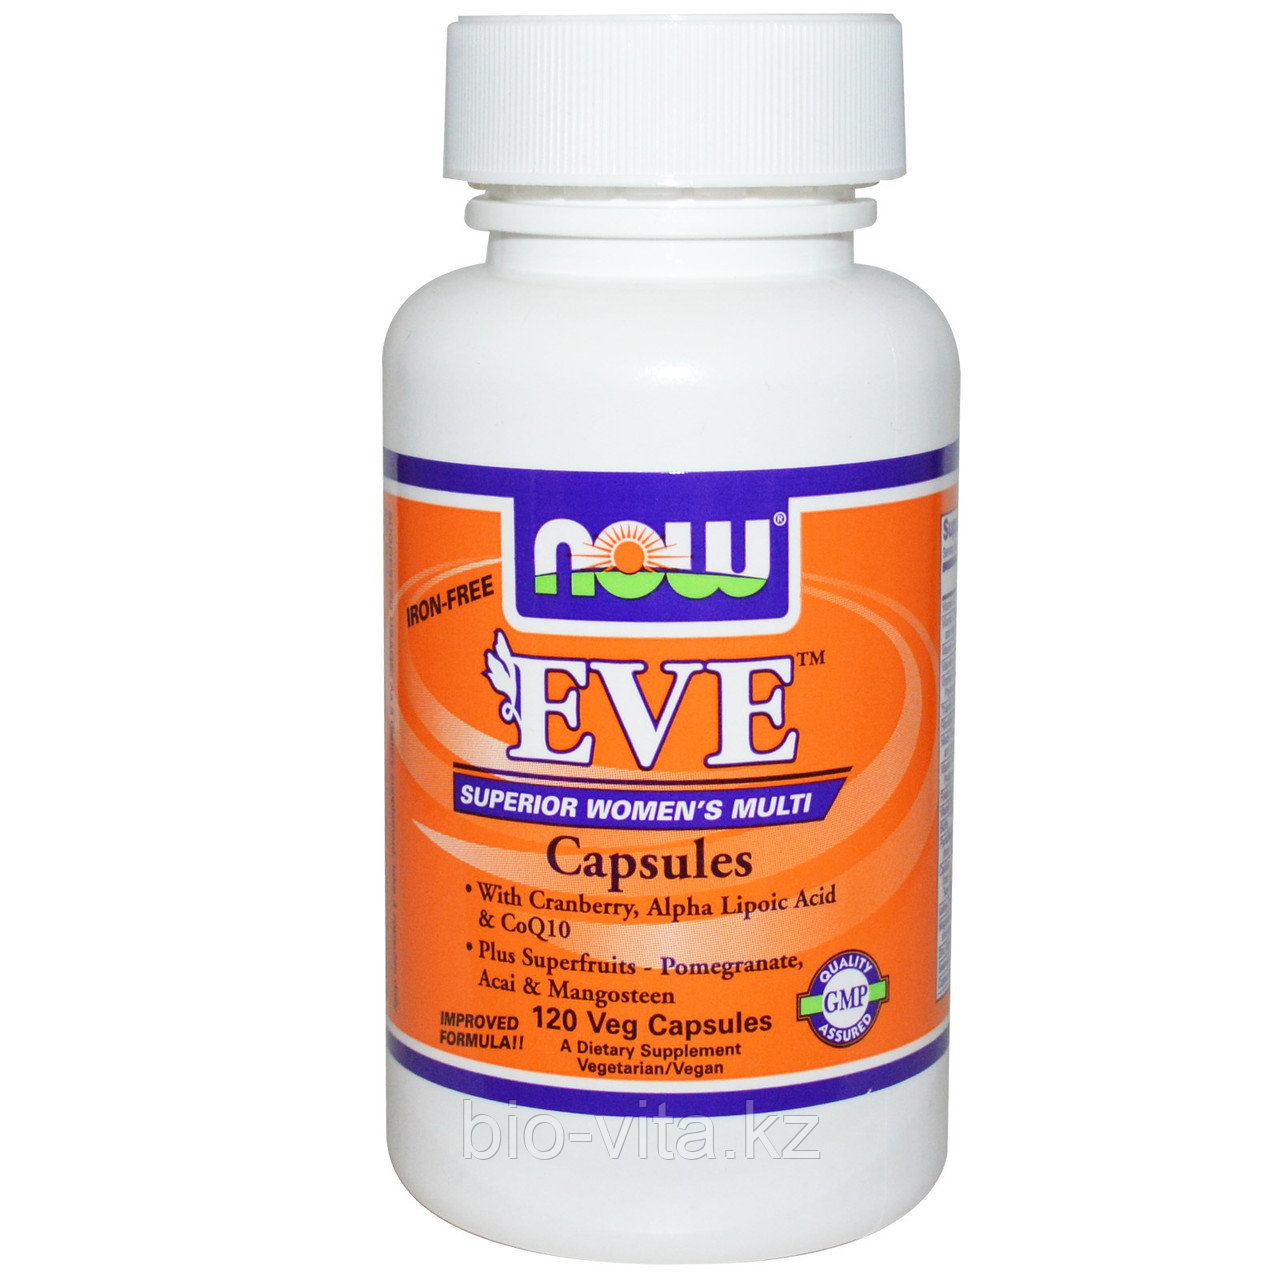 Мультивитамины для женщин в капсулах, без железа, 120 вегетарианских капсул. Eve. ЕВА. Now Foods, фото 1